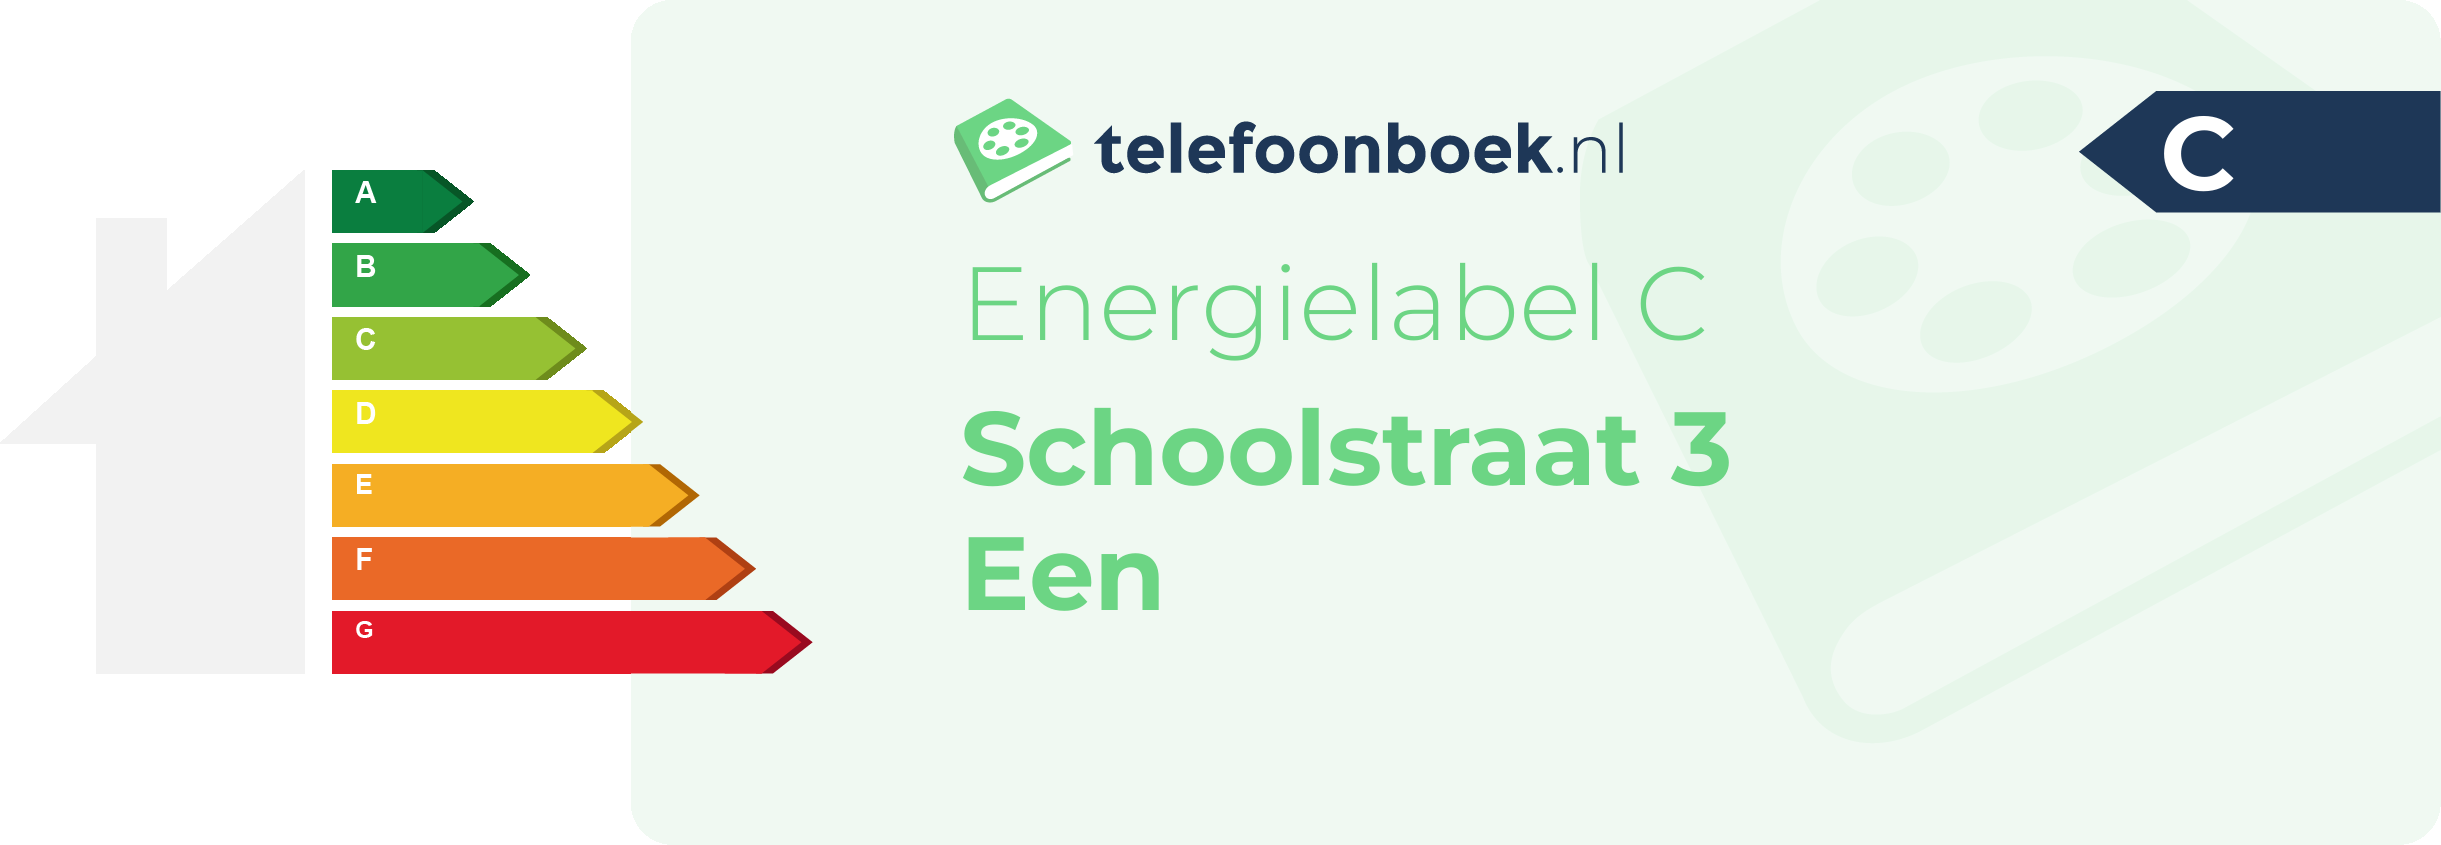 Energielabel Schoolstraat 3 Een